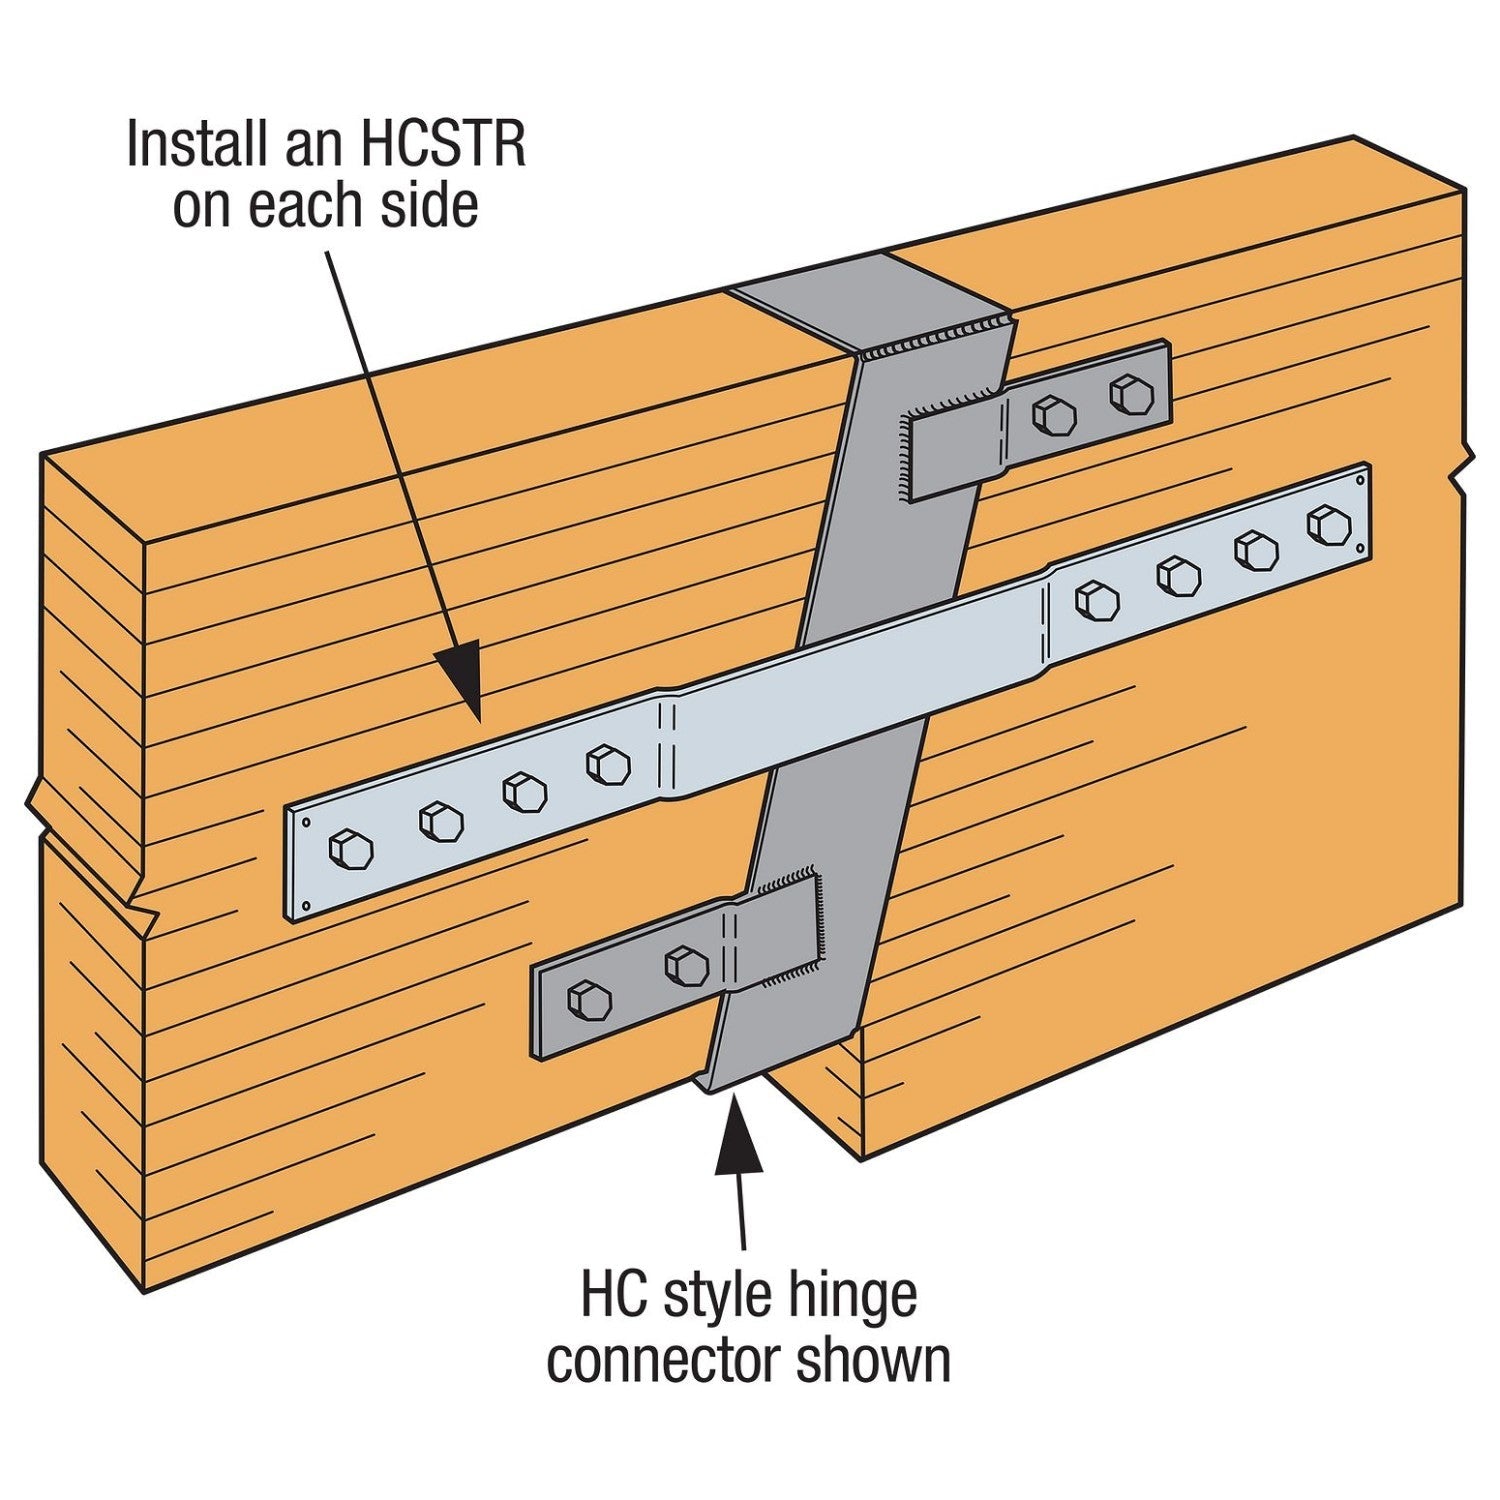 Typical HCSTR Installation - HCSTR4 shown